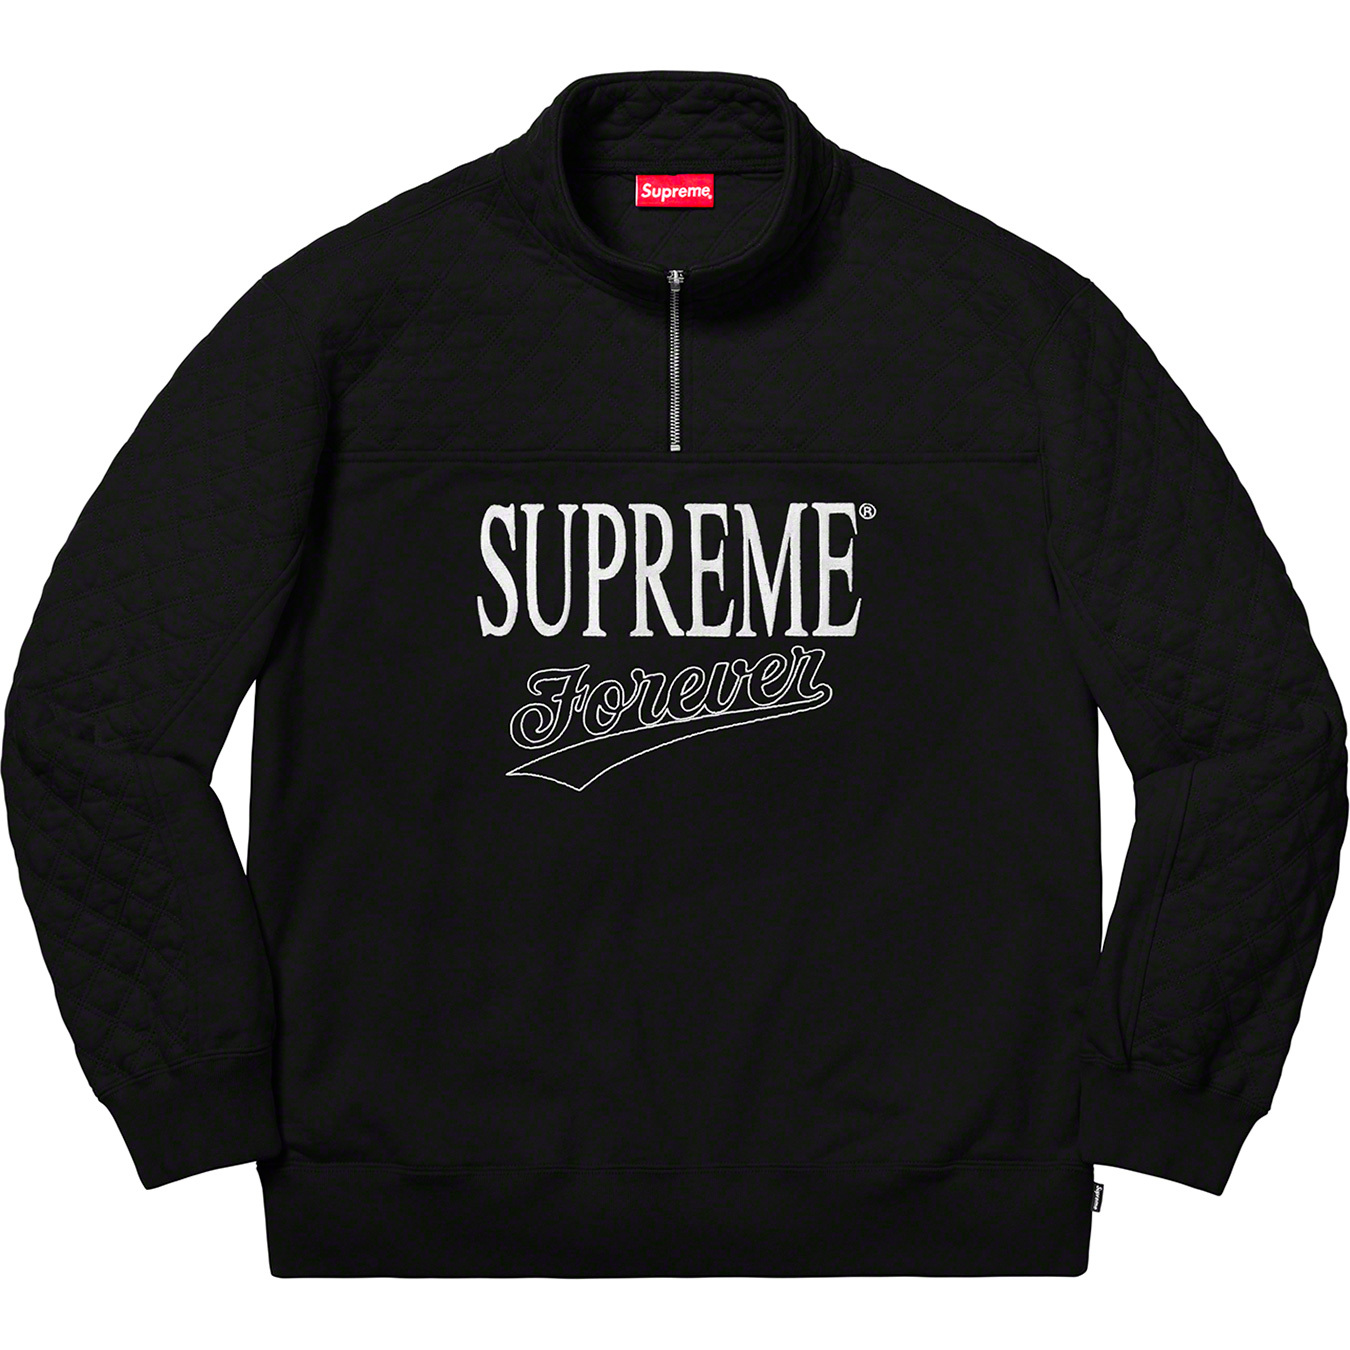 Supreme Forever Half Zip Sweatshirt